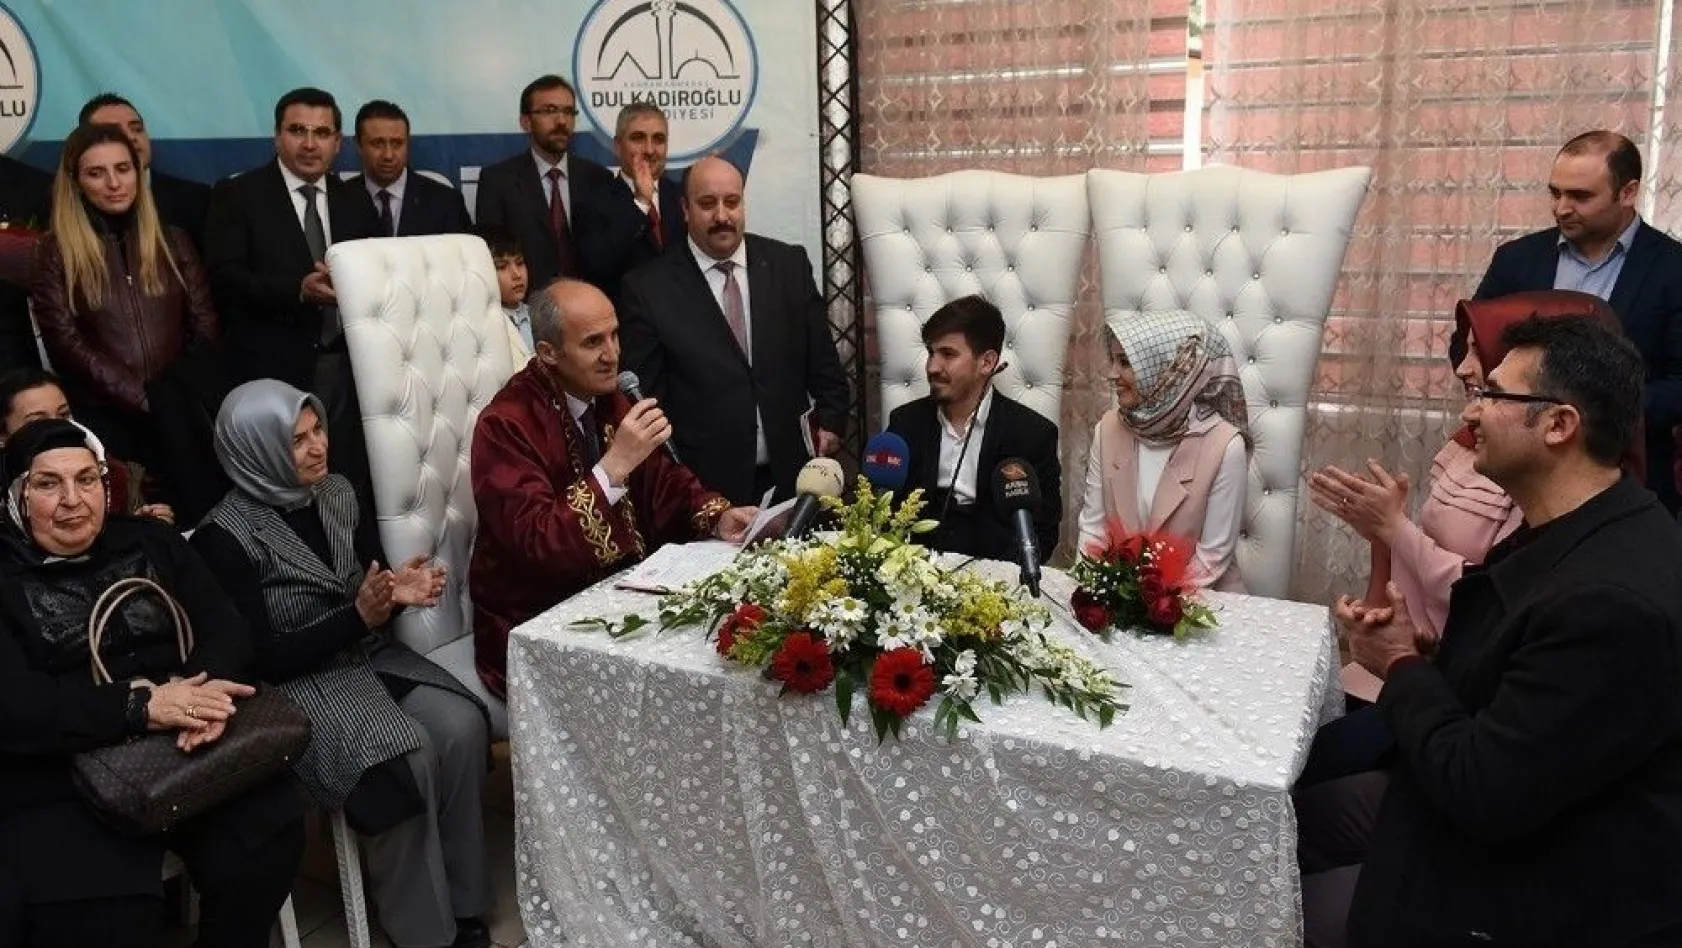 Dulkadiroğlu'nda 2018'inci çift dünya evine girdi
